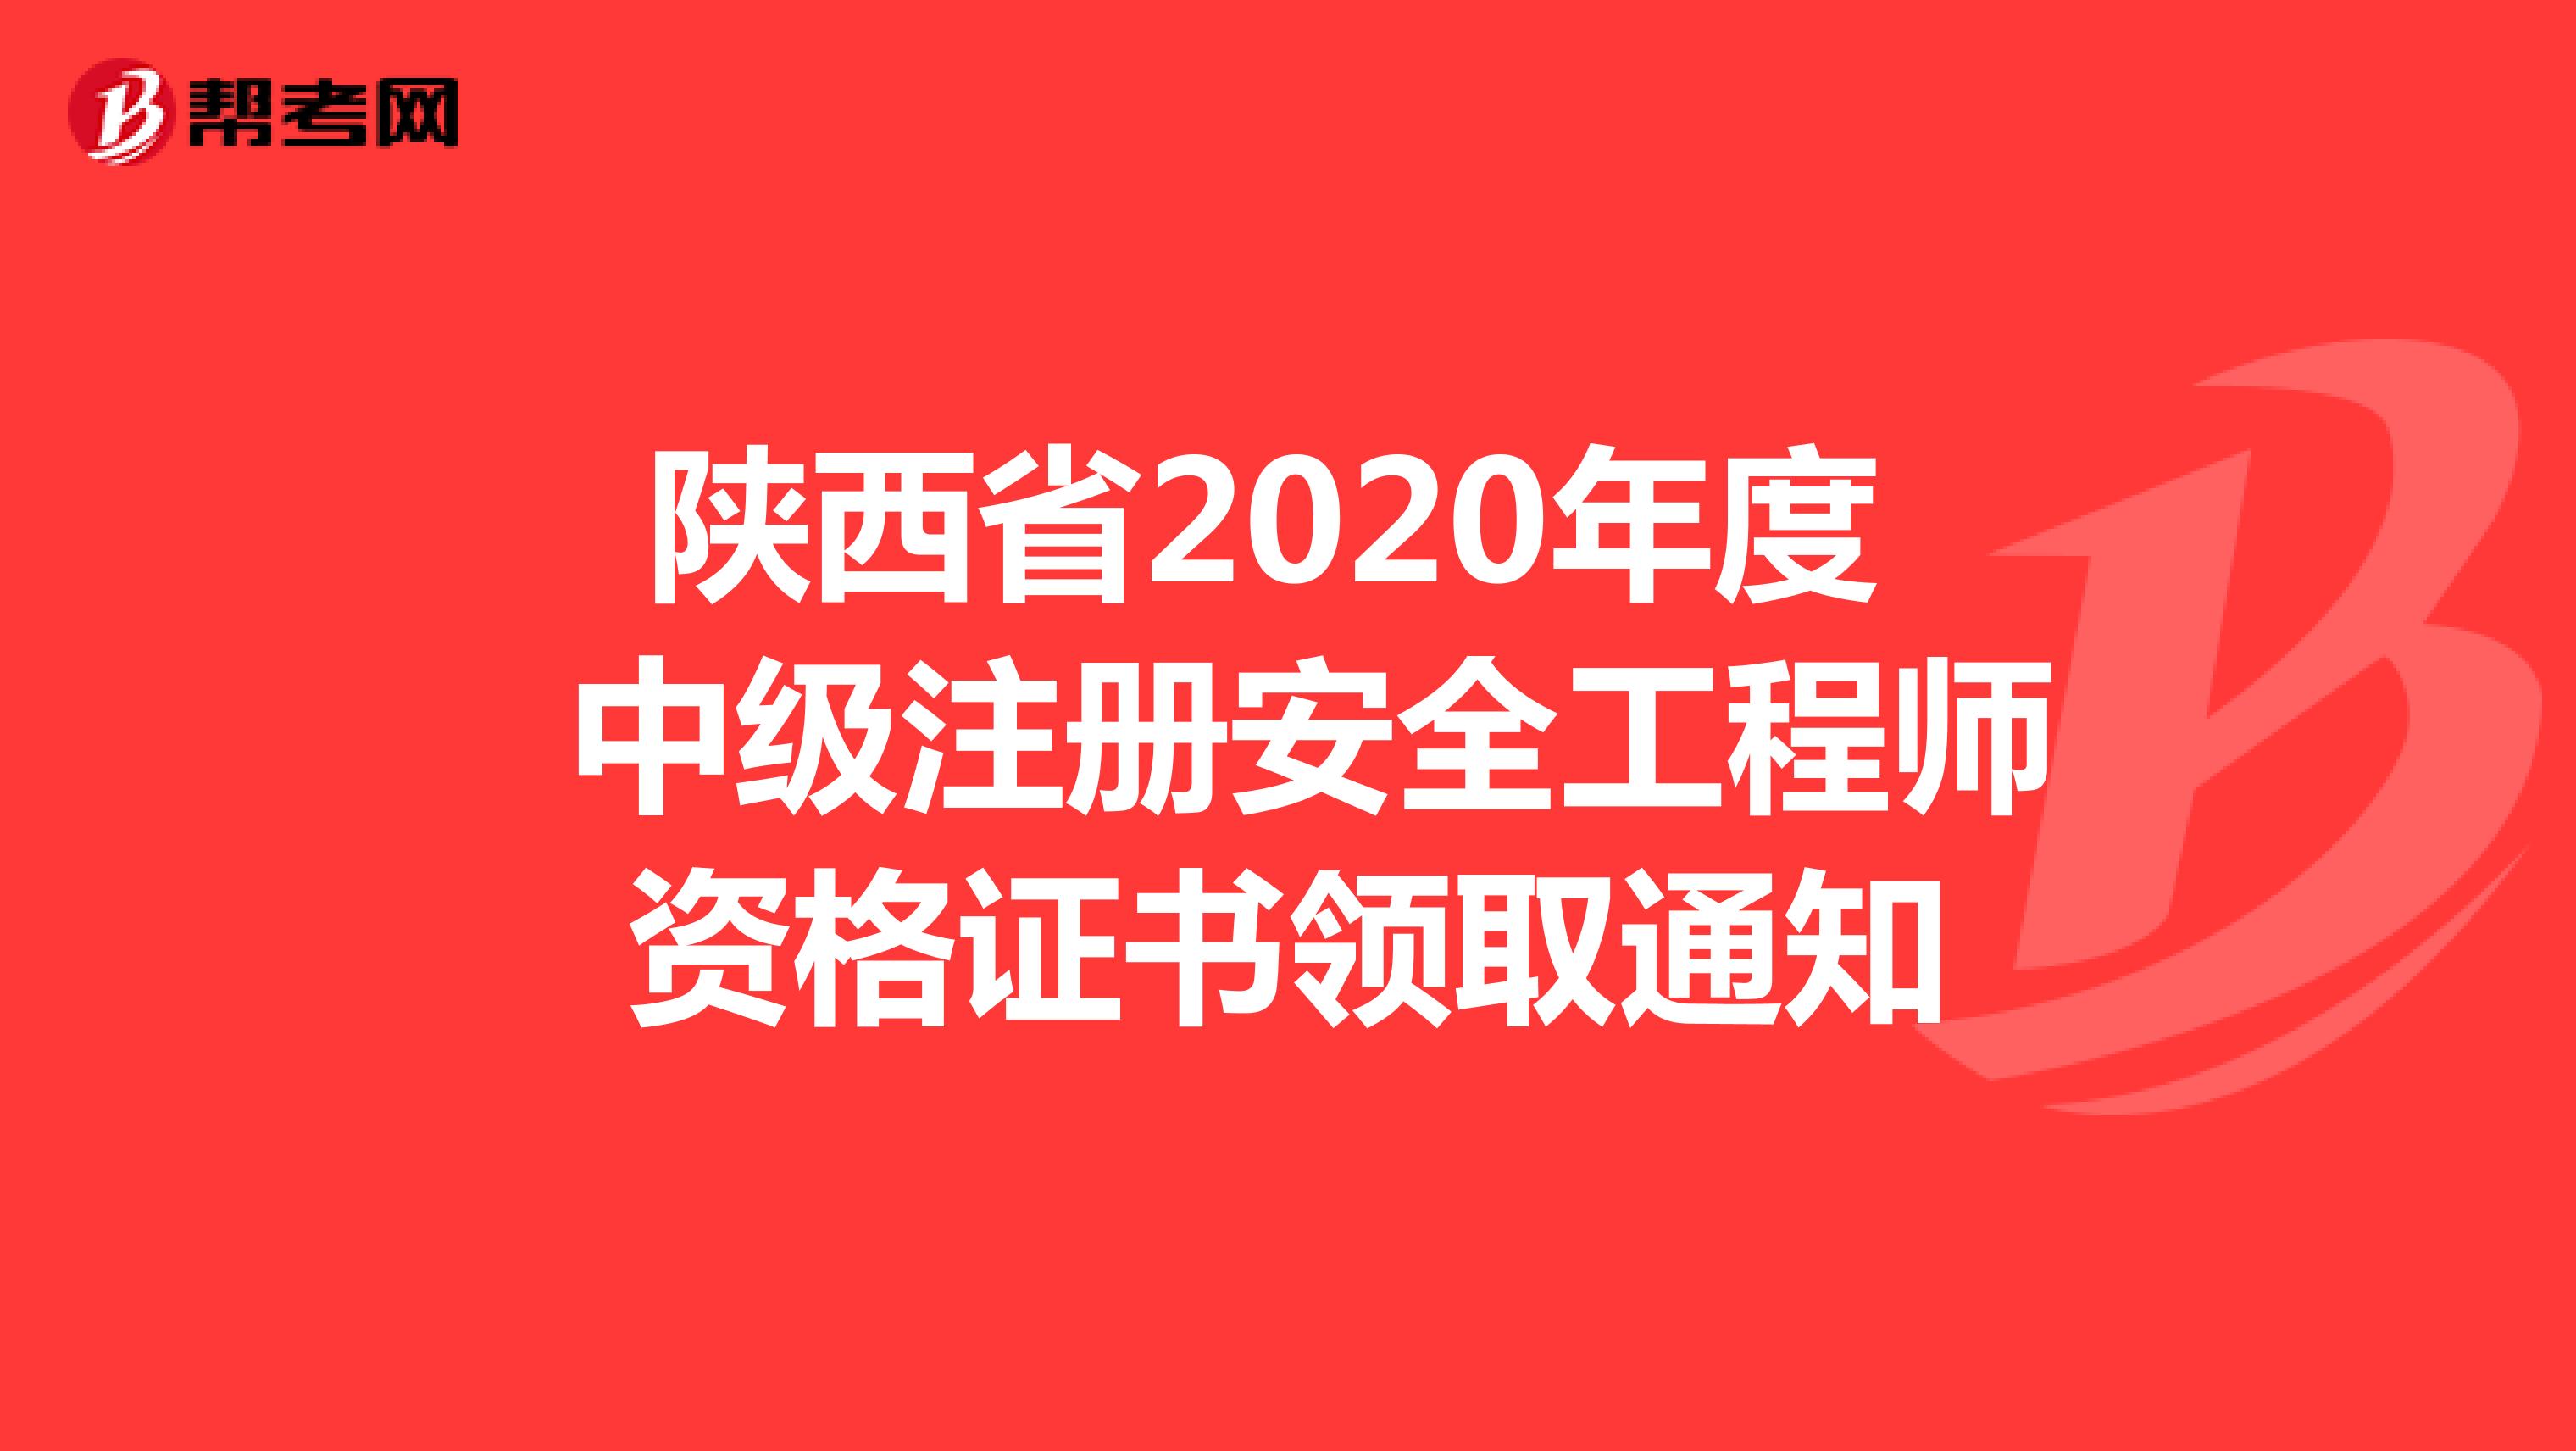 陕西省2020年度 中级注册安全工程师资格证书领取通知